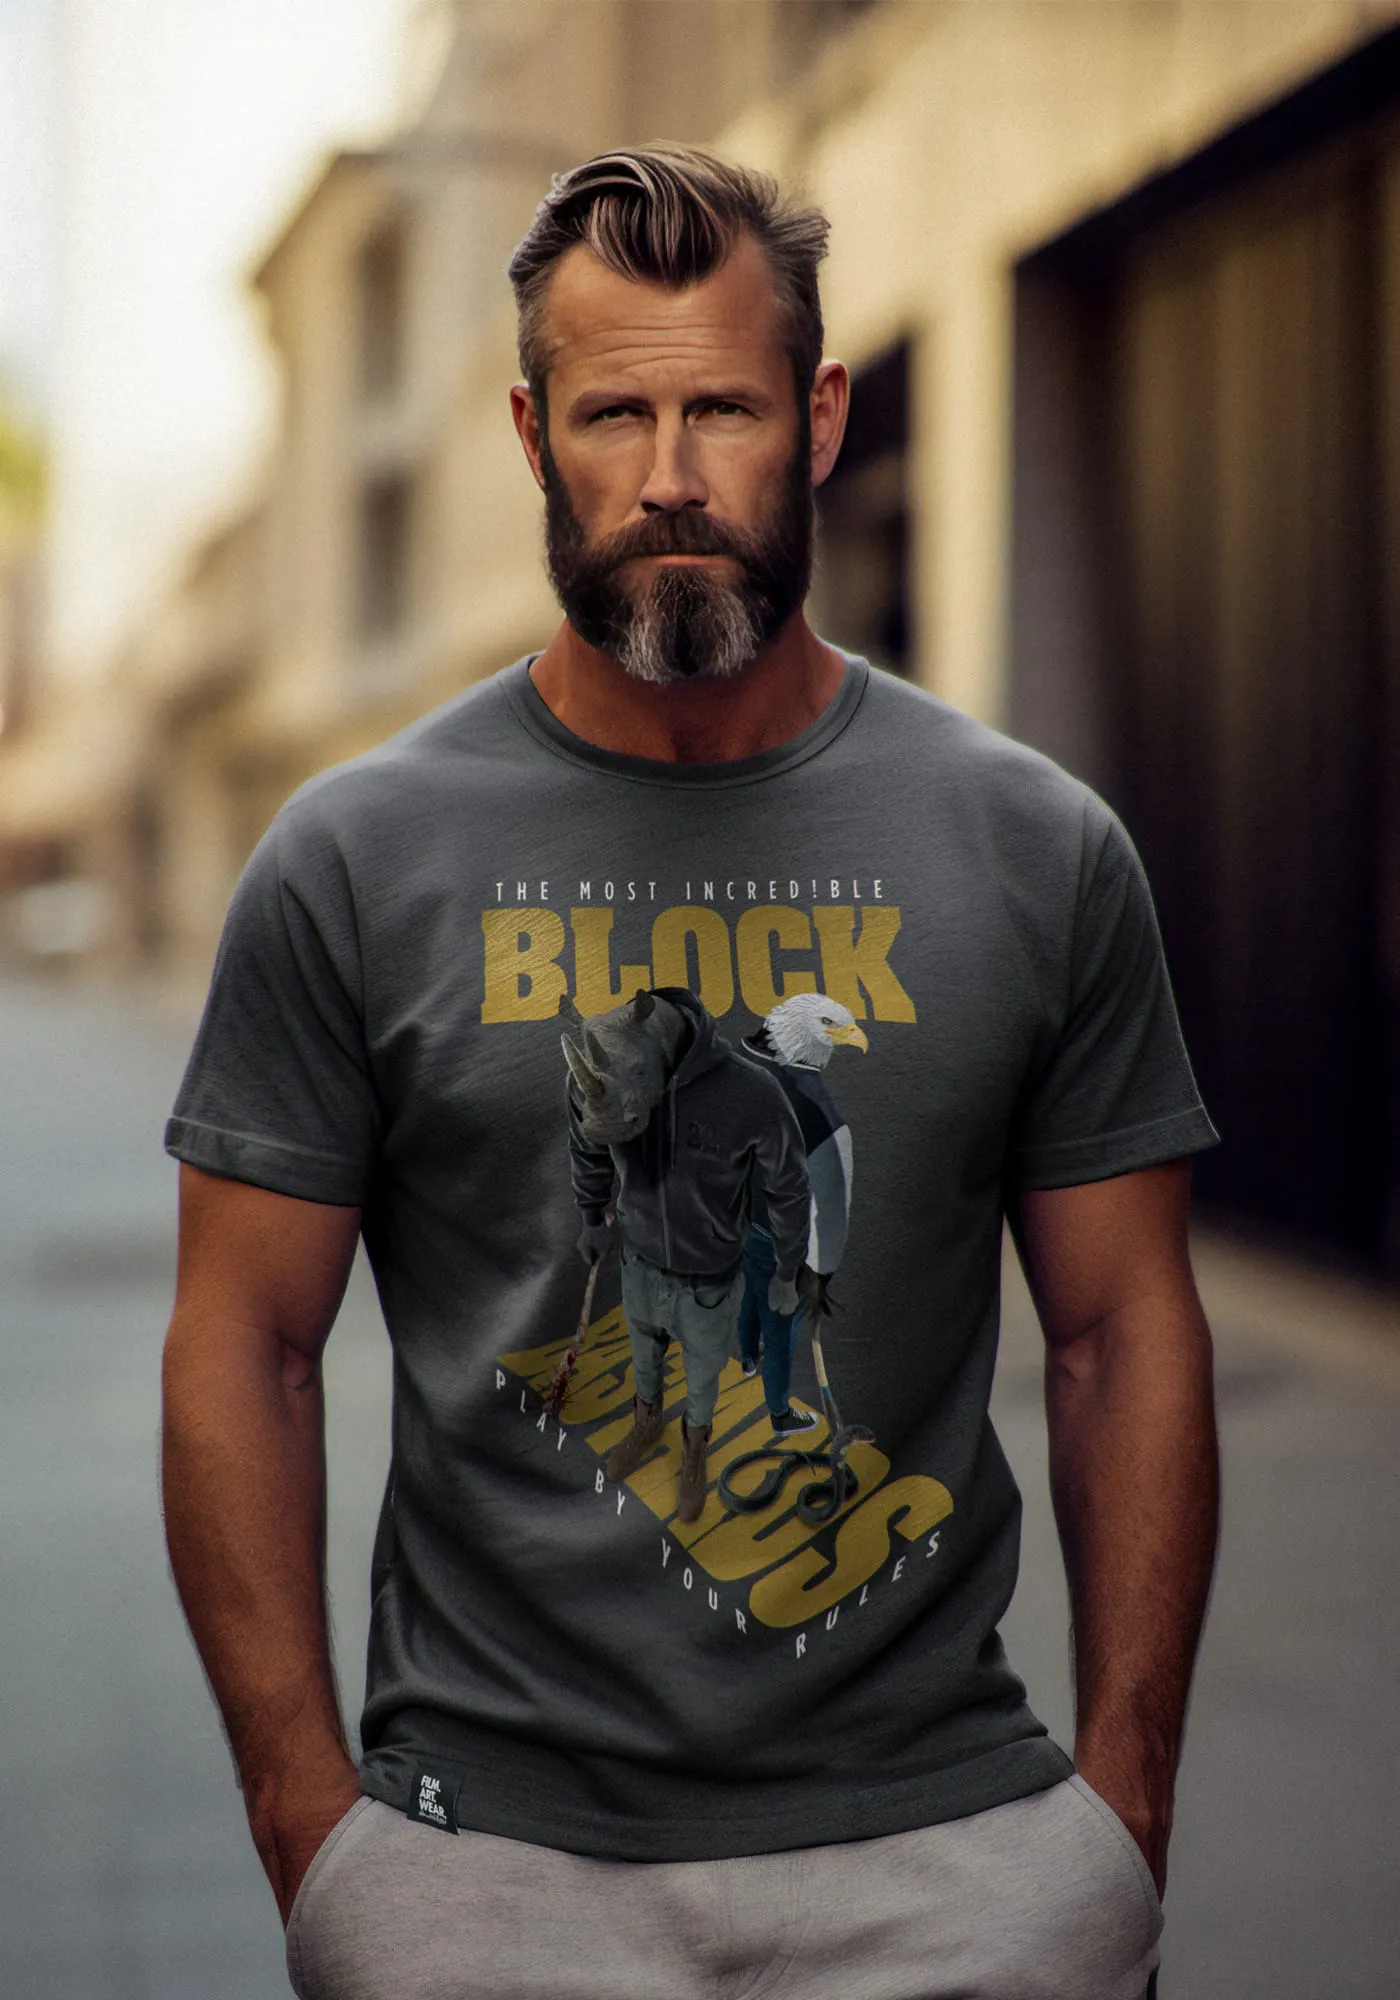 Matt trägt Blockbastards T-Shirt in anthrazit in urbaner Straßenumgebung